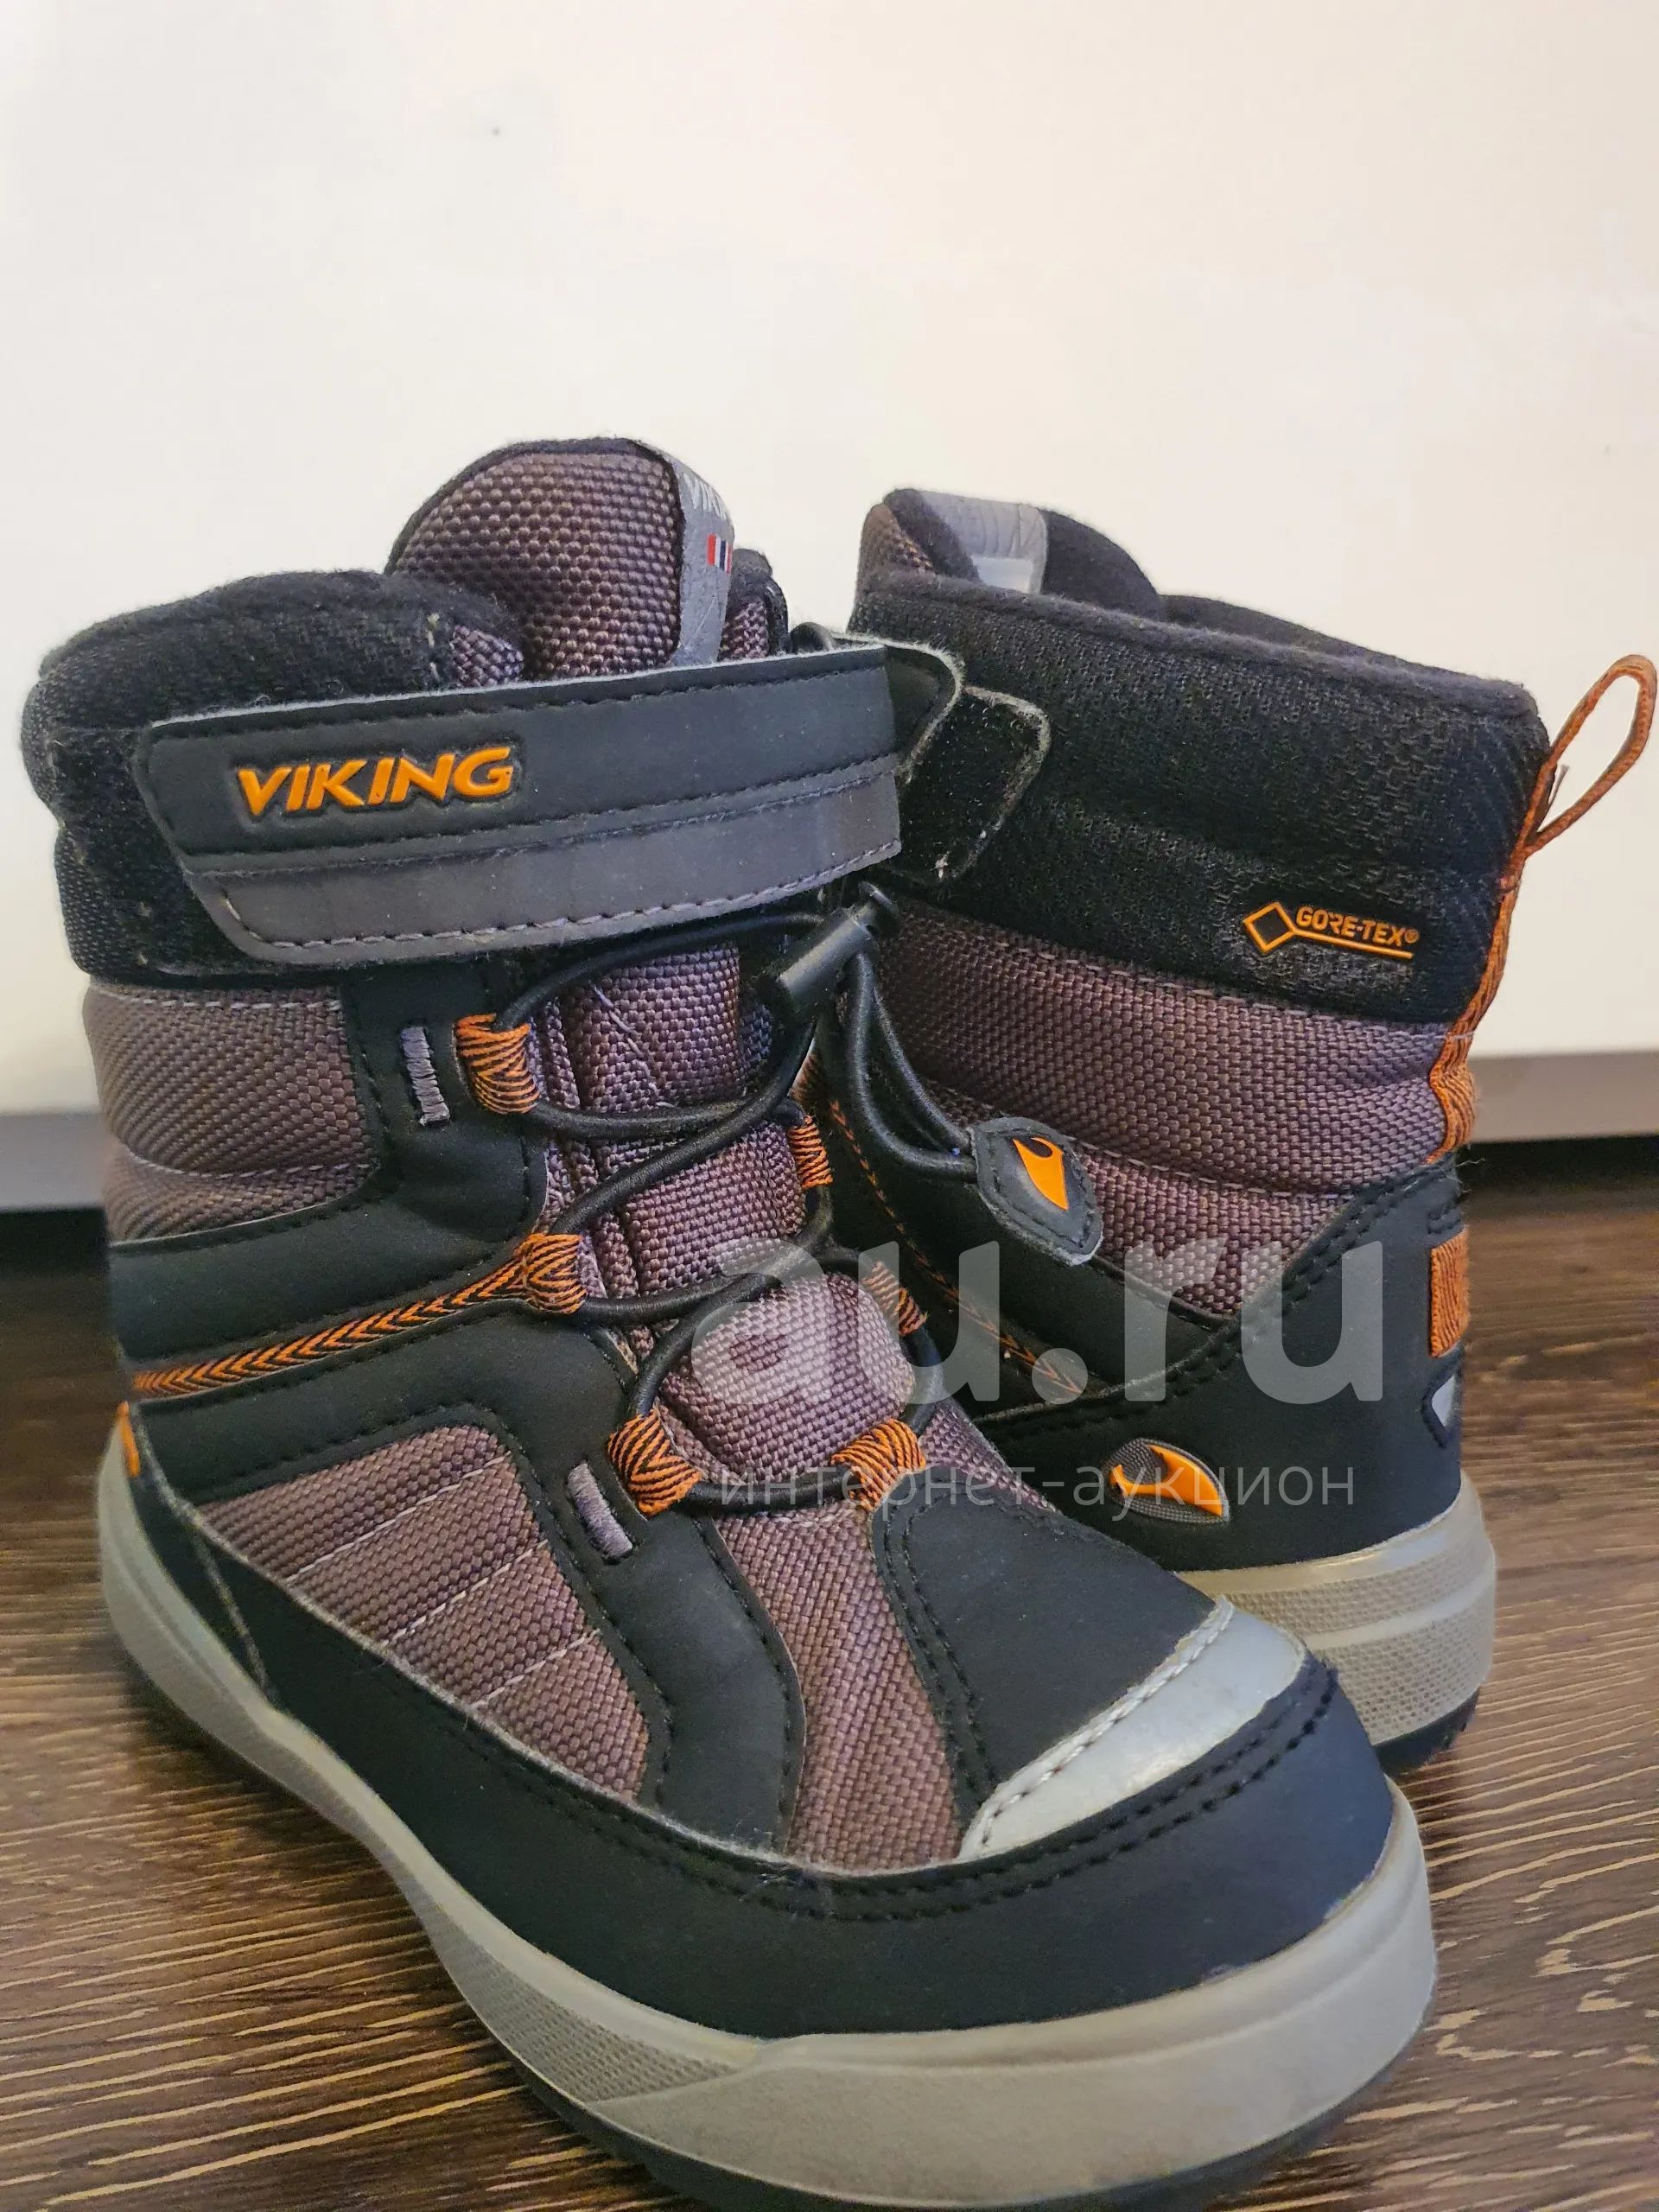 Ботинки Viking Playtime GTX (Зима) — купить в Красноярске. Состояние:  Отличное. Ботинки на интернет-аукционе Au.ru